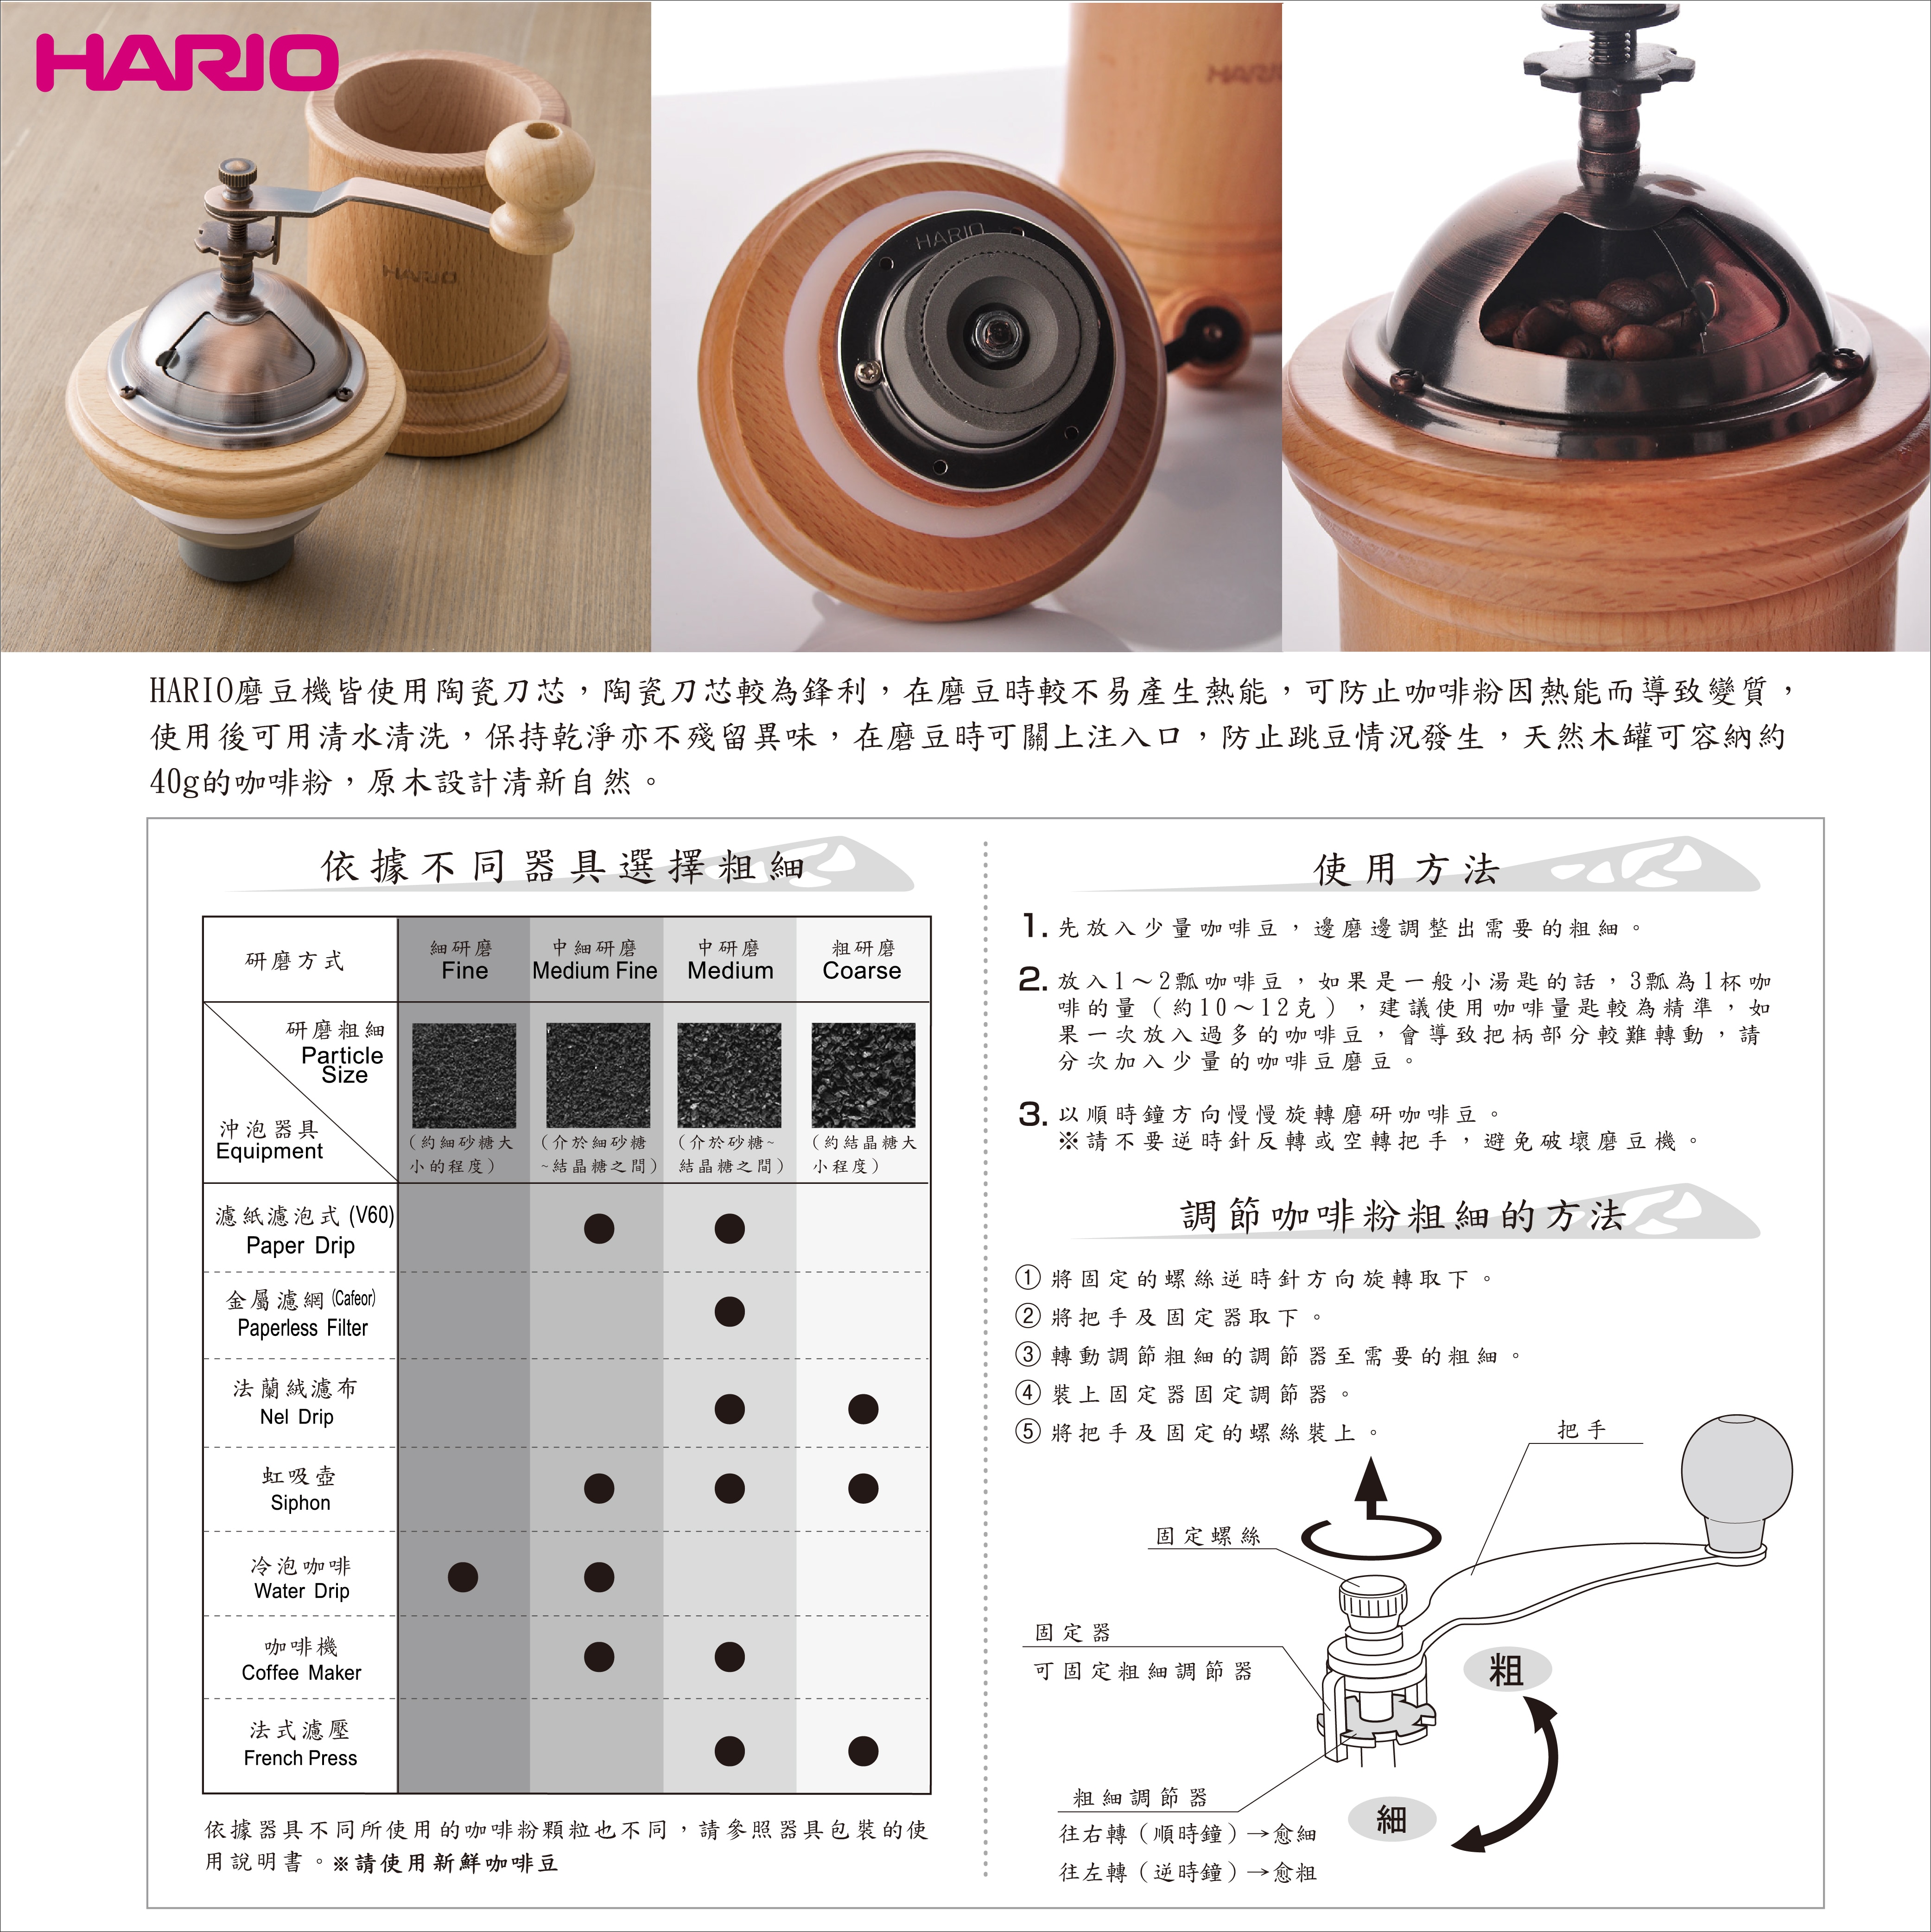 Hario 木製瓶身手搖磨豆機使用陶瓷刀芯,磨豆較不易產生熱能,使用後可用清水清洗,不殘留異味。注入口可關上防止跳豆情況,天然木罐可容納咖啡粉。